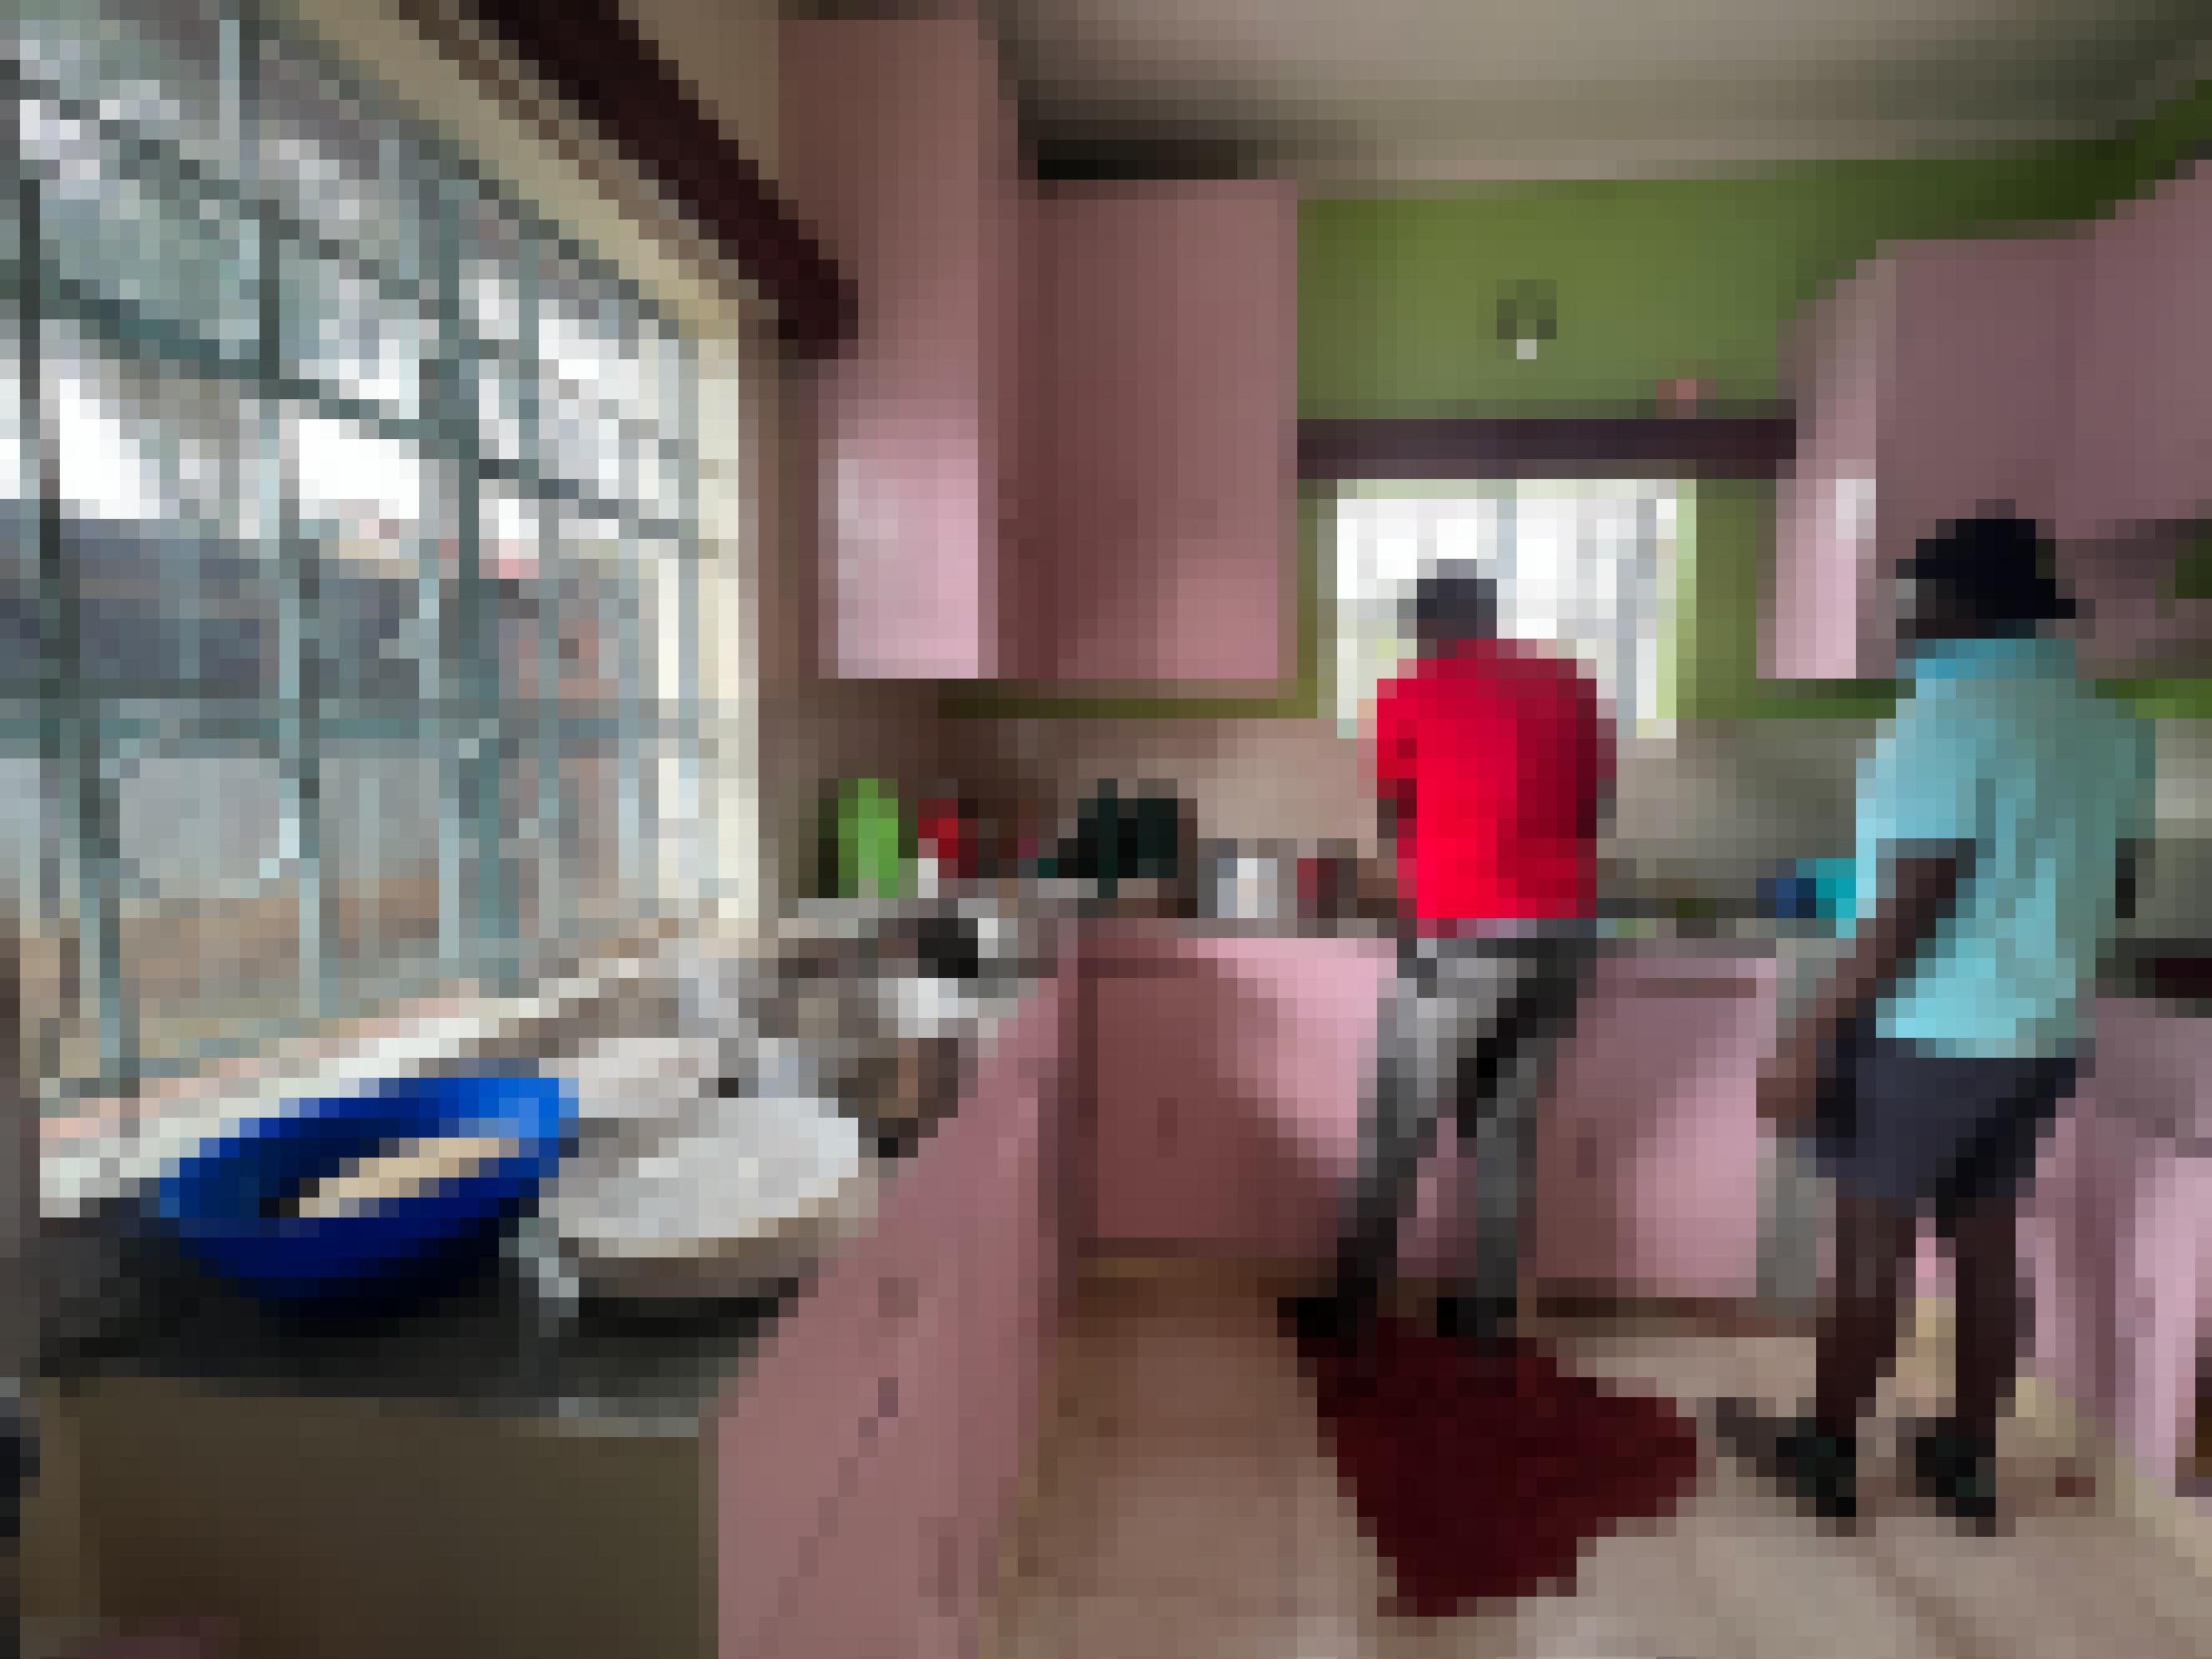 Zwei Männer, von hinten zu sehen, in einer Küche. Auf den Arbeitsplatten stehen Töpfe, offenbar wird ein Essen vorbereitet.